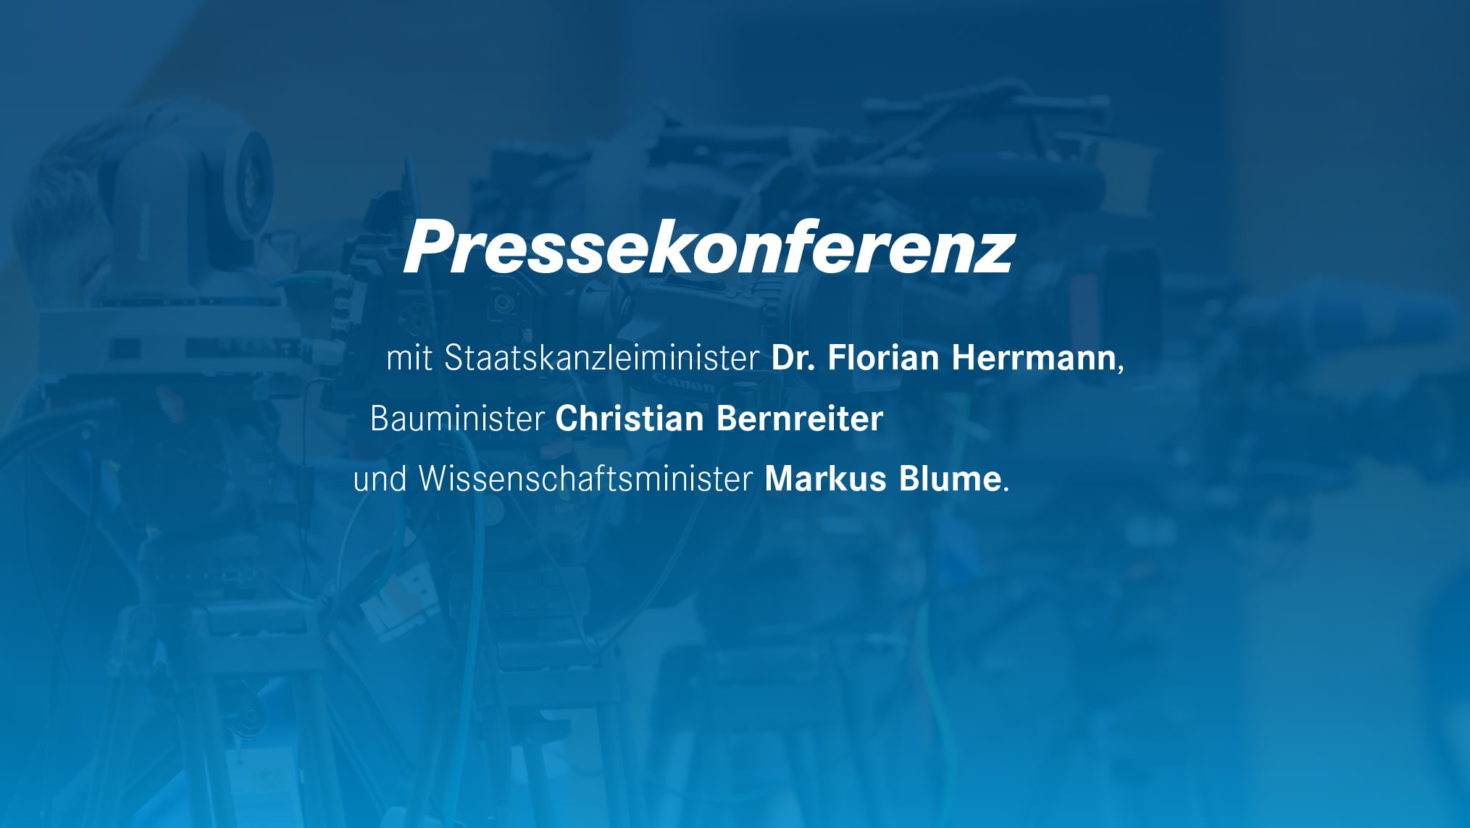 Pressekonferenz mit Staatskanzleiminister Dr. Florian Herrmann, Bauminister Christian Bernreiter und Wissenschaftsminister Markus Blume.